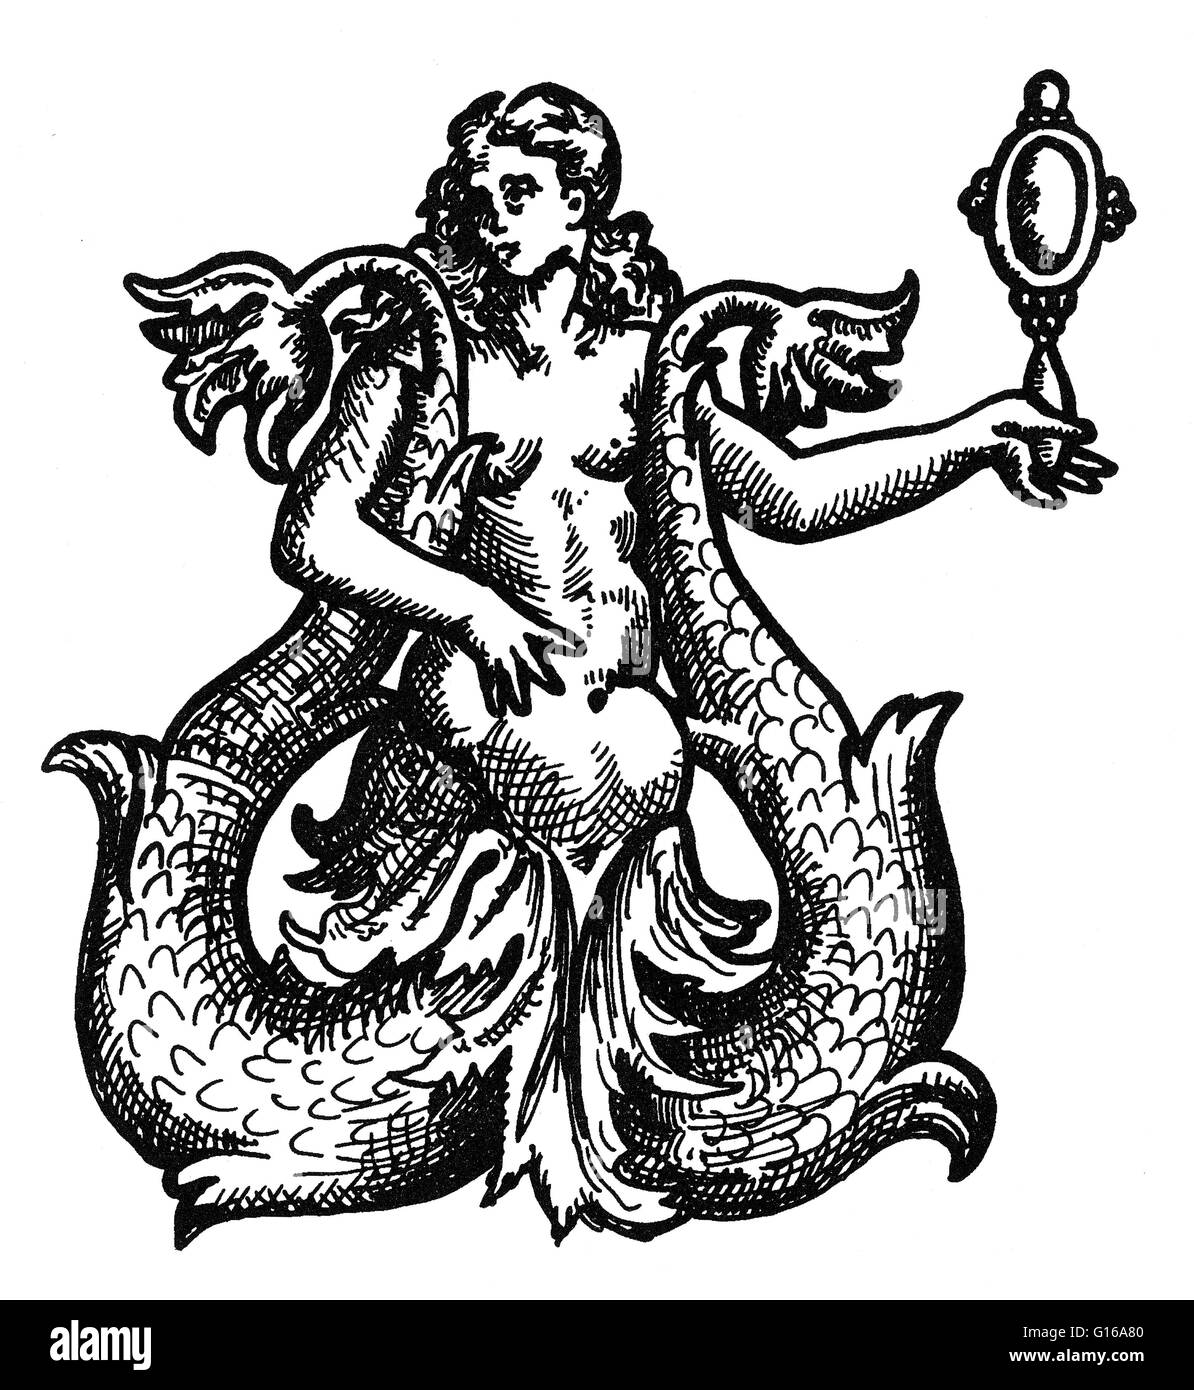 Une sirène est une créature aquatique légendaire avec le haut du corps d'une femme humain et la queue d'un poisson. Les sirènes apparaissent dans le folklore de nombreuses cultures dans le monde, y compris le Proche-Orient, d'Europe, d'Afrique et d'Asie. Les sirènes sont parfois associés à des pe Banque D'Images